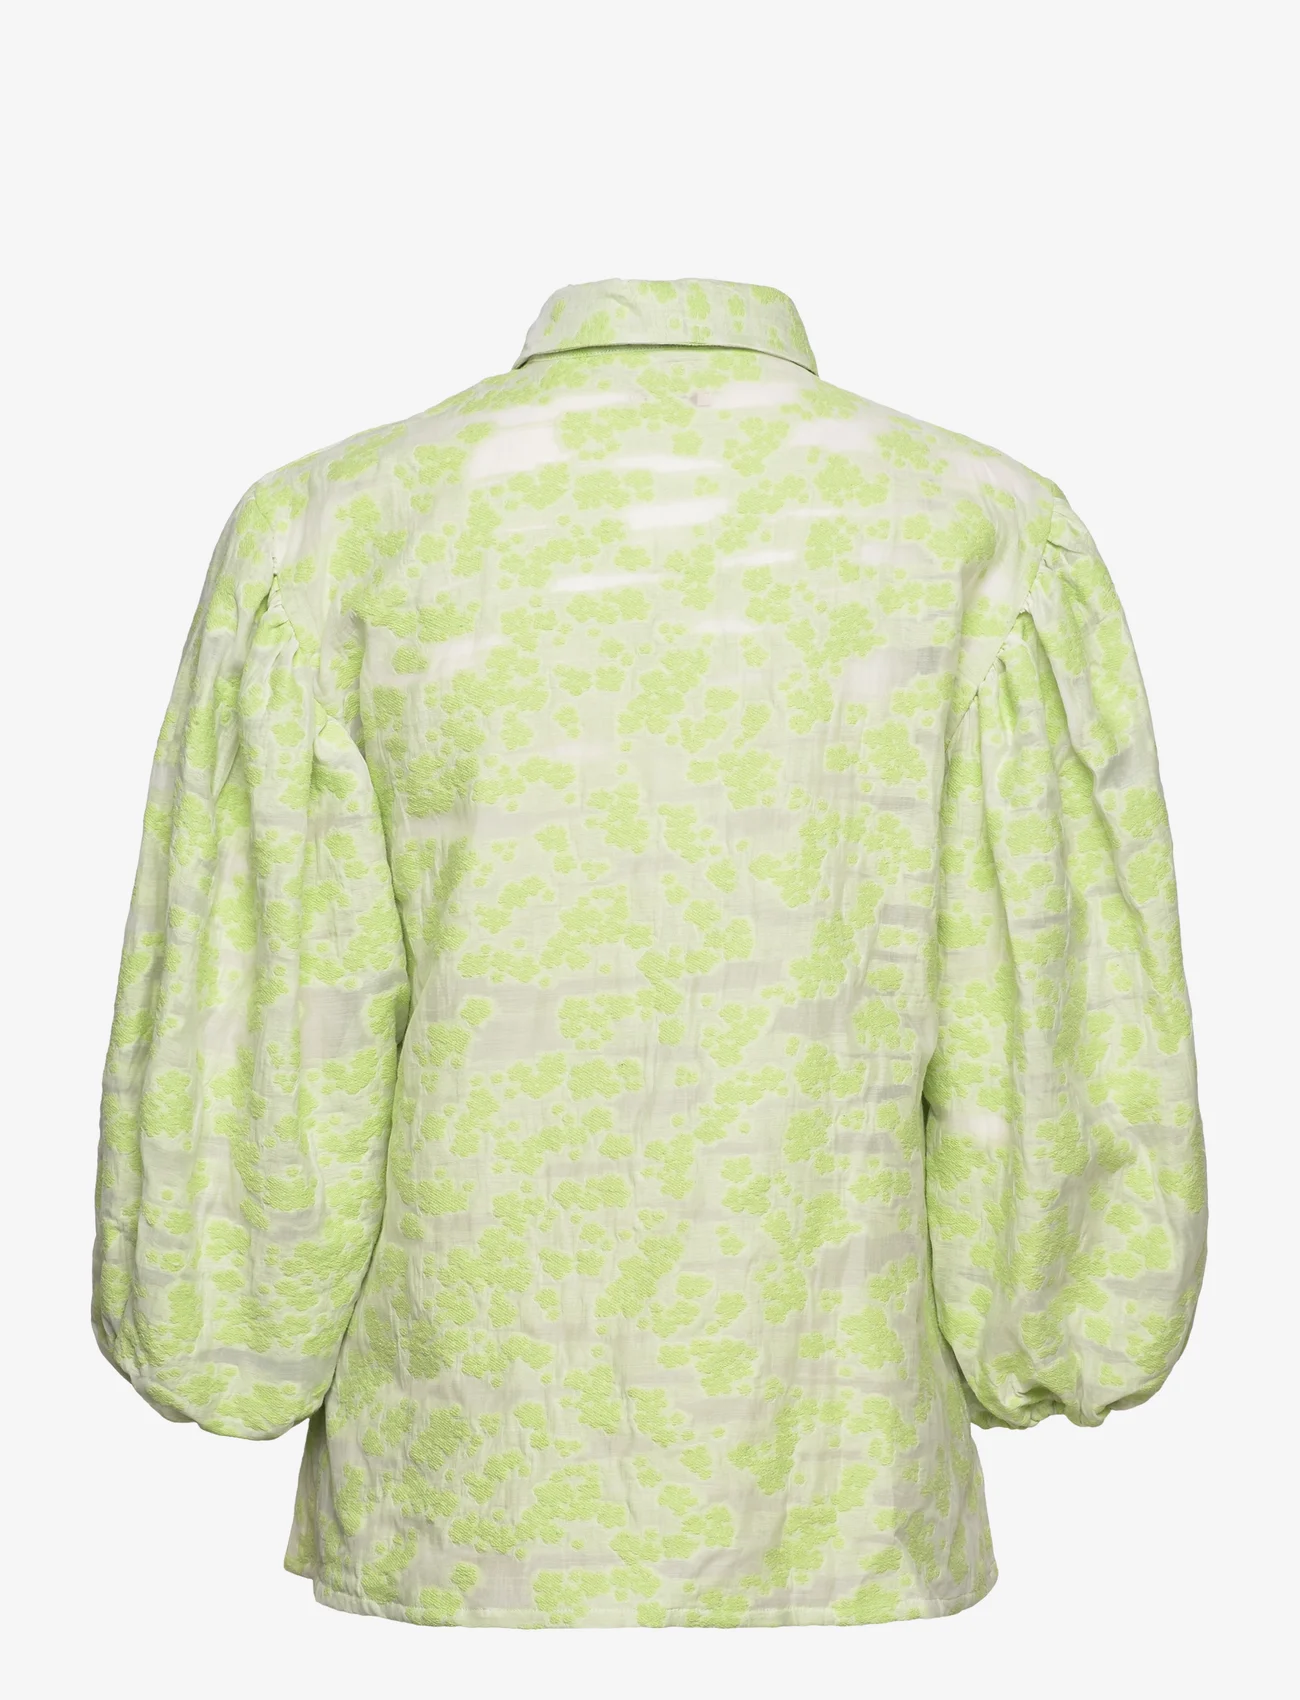 MOS MOSH - SP Magana Puff Shirt - long-sleeved shirts - arcadian green - 1